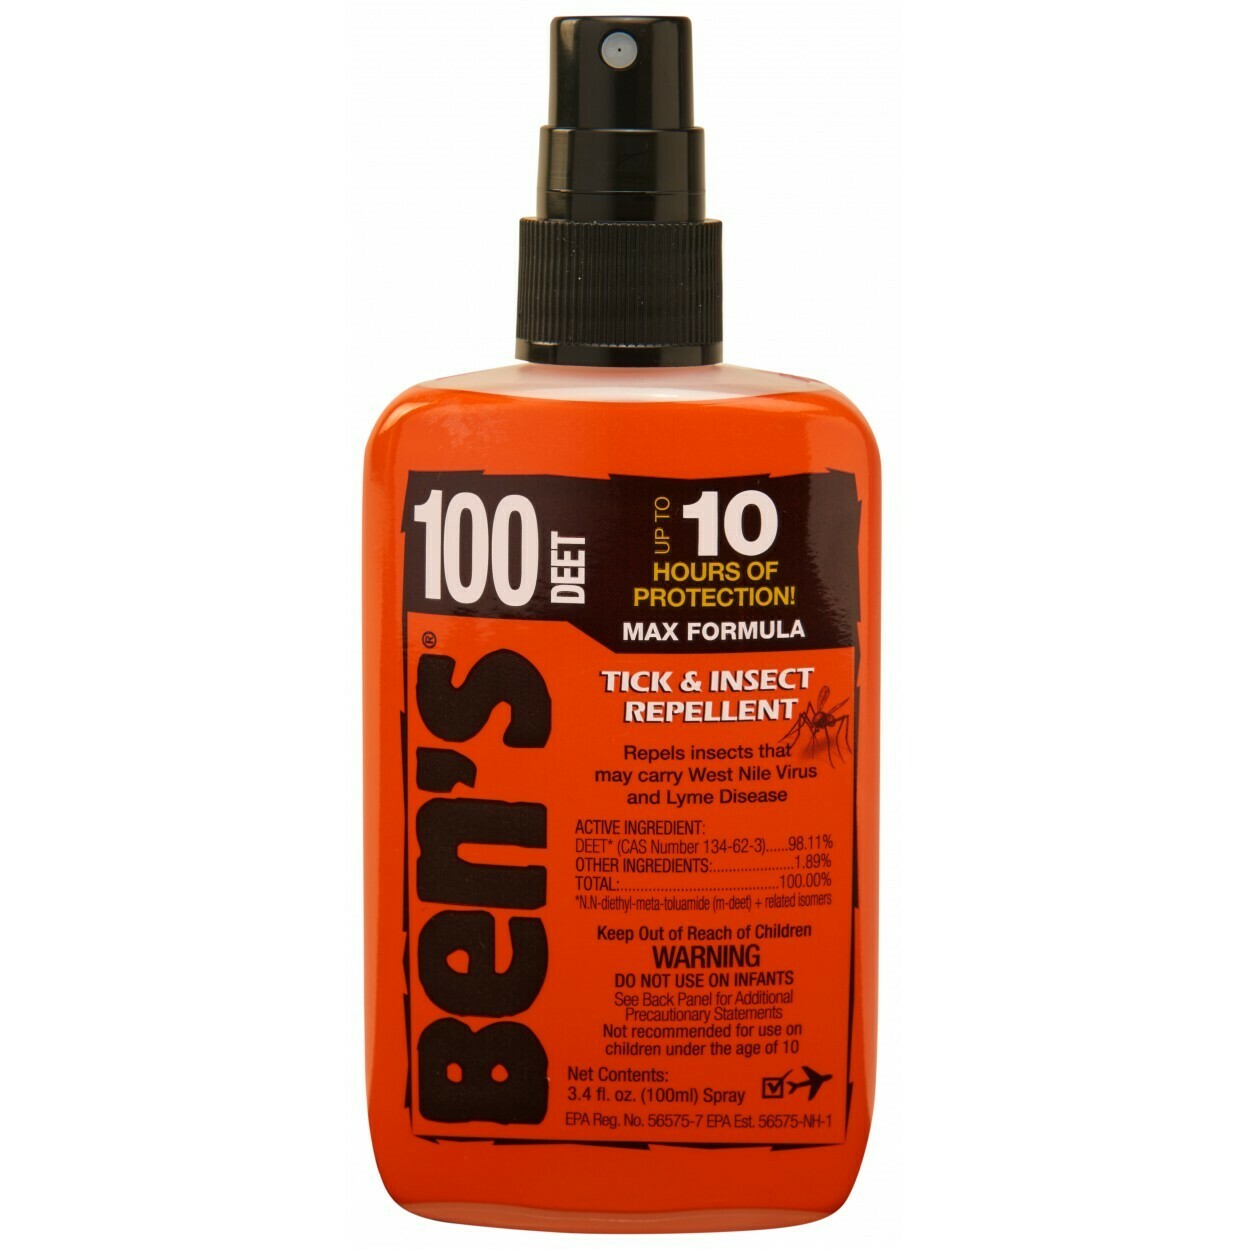 Ben's Max Formula 100 Tick & Insect Repellant 3.4 oz Pump Spray 100% Deet